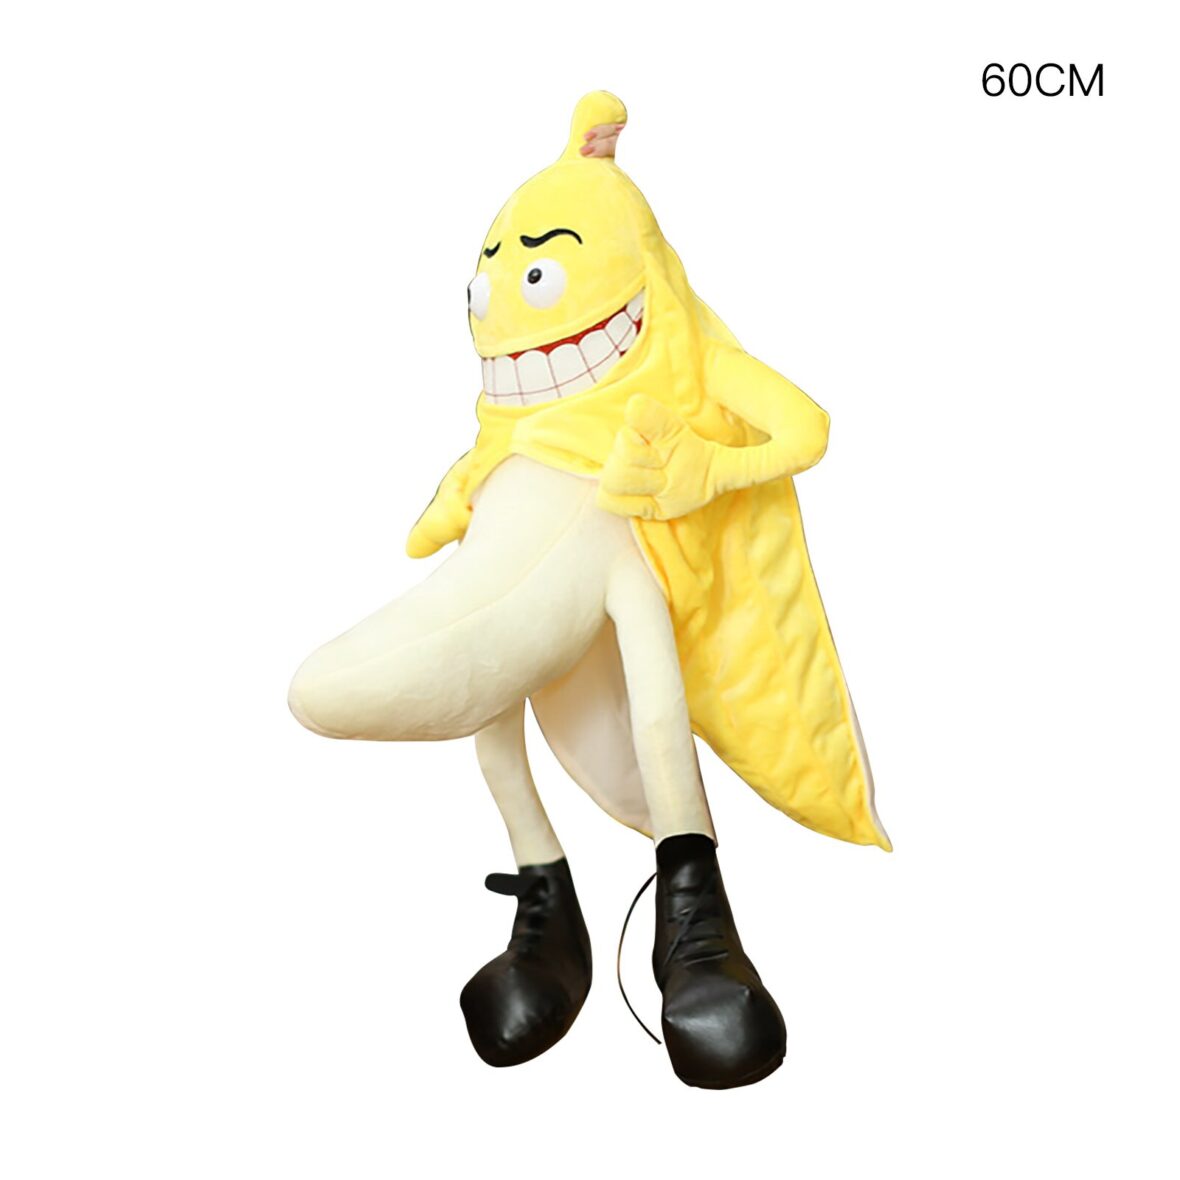 Evil Bad Banana Man Soft Plush Toy